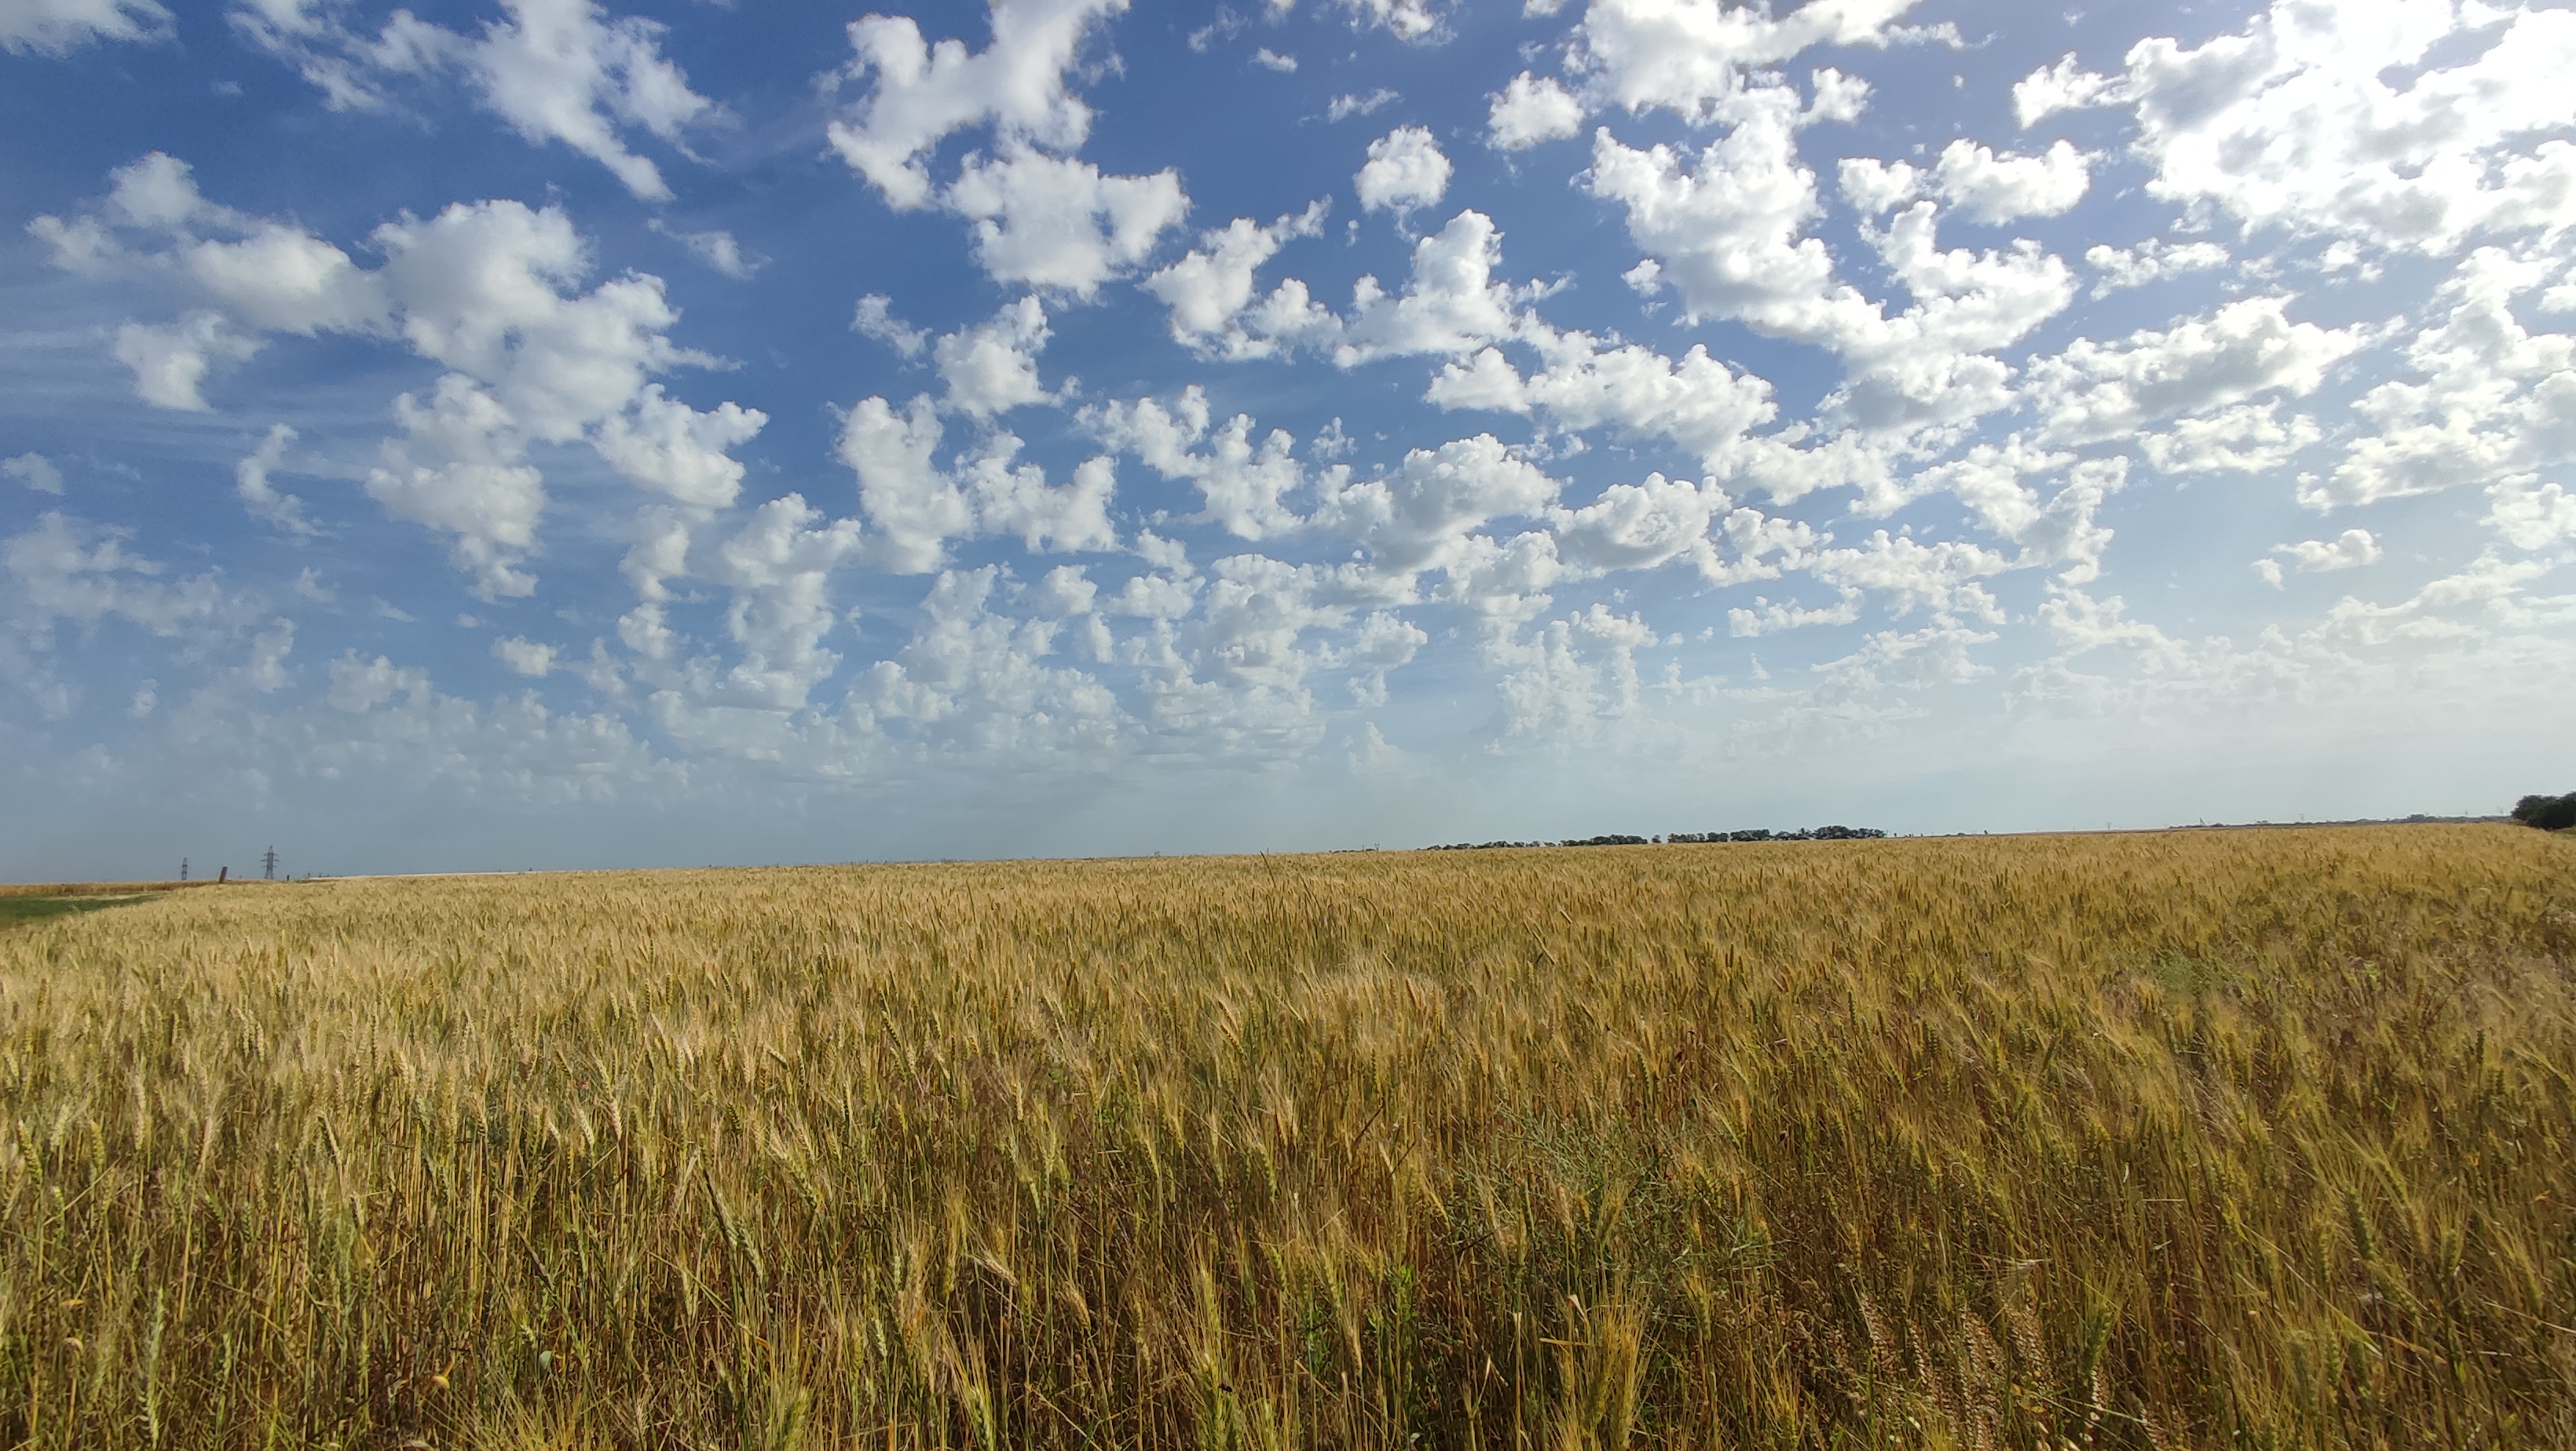 Поле пшеницы ! Целое поле истины и гармонии... знойное, благодатное лето во всей красе и любви !